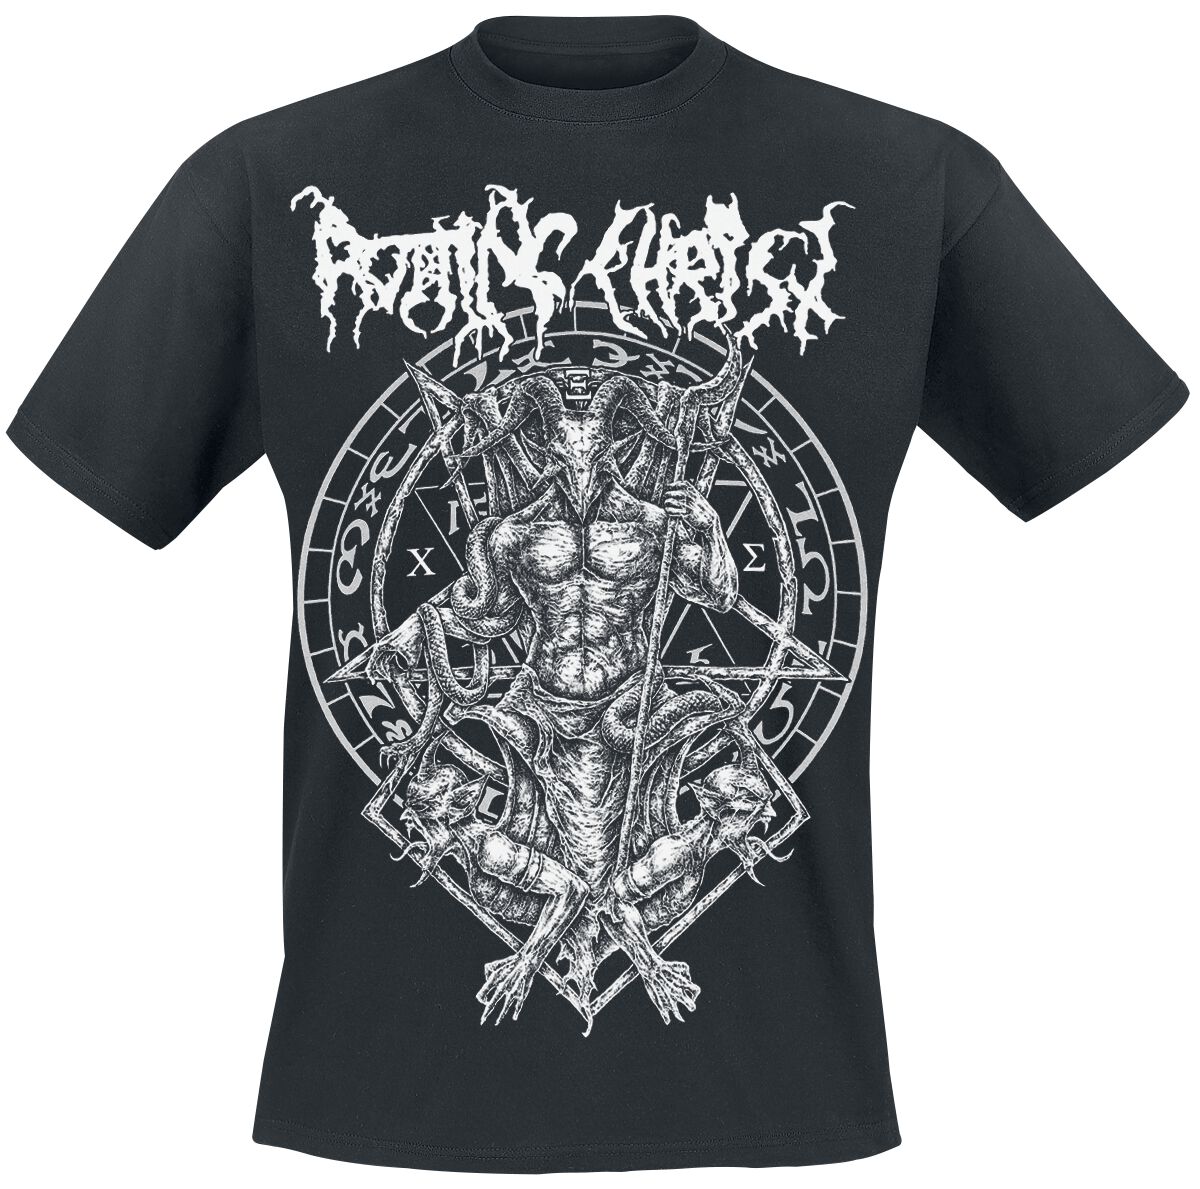 Rotting Christ T-Shirt - Hellenic Black Metal Legions - S bis XXL - für Männer - Größe M - schwarz  - Lizenziertes Merchandise!